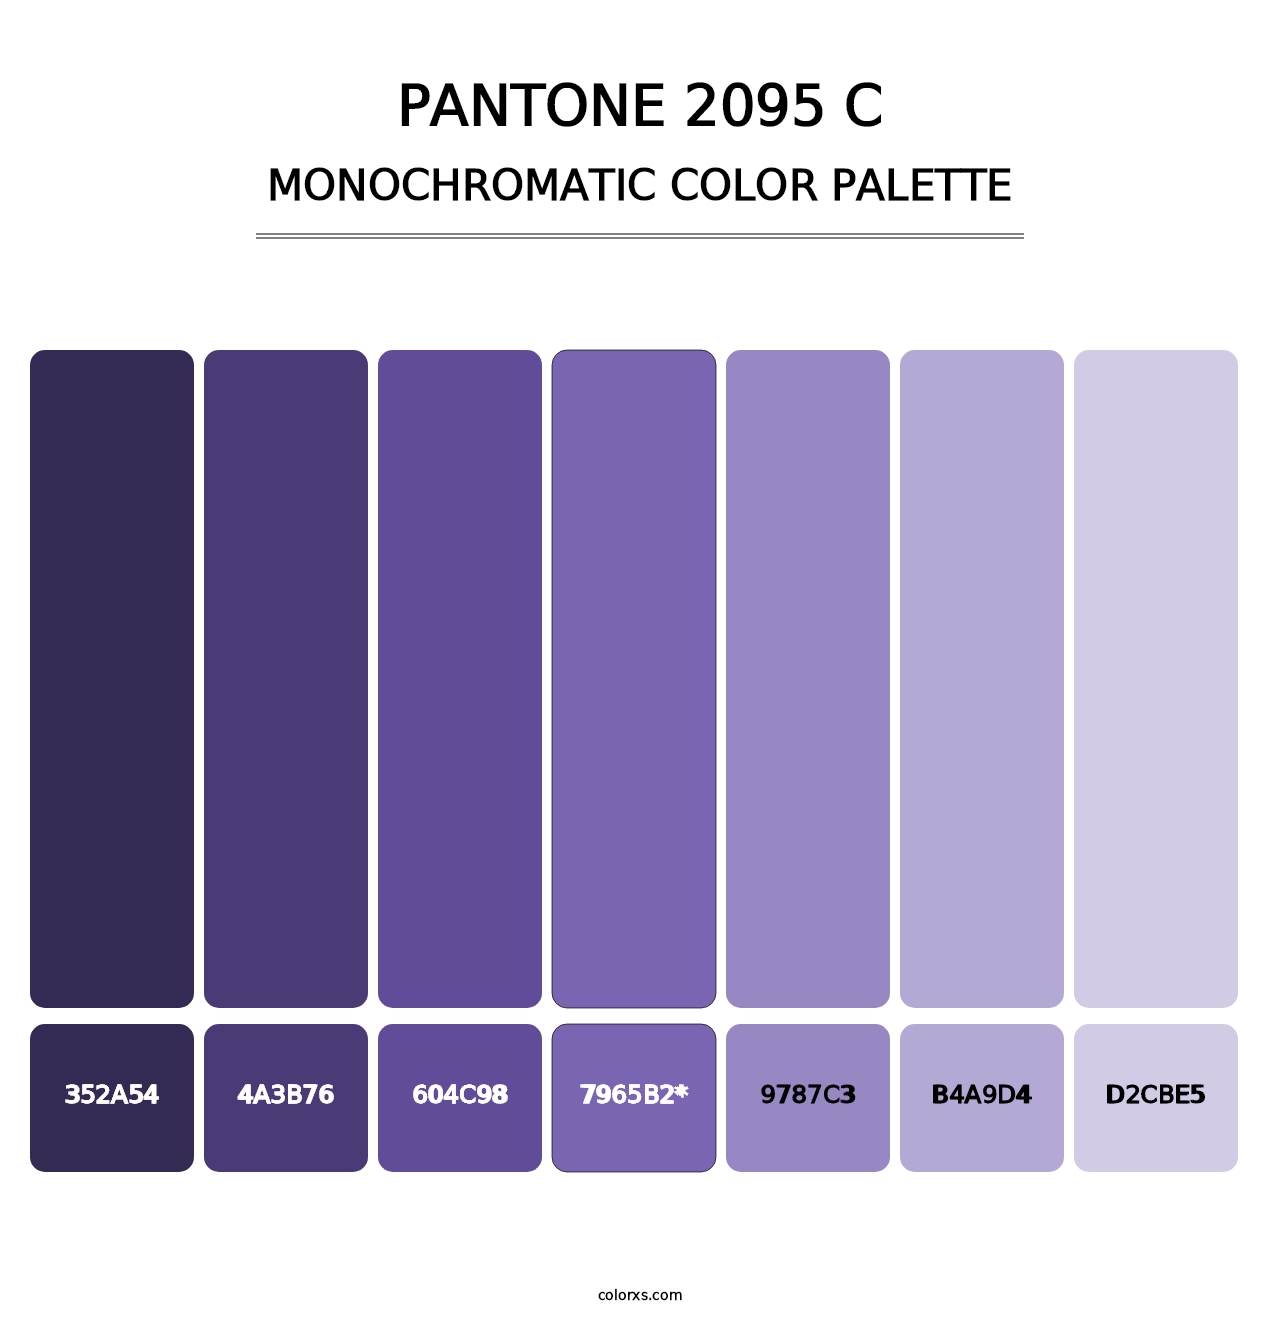 PANTONE 2095 C - Monochromatic Color Palette